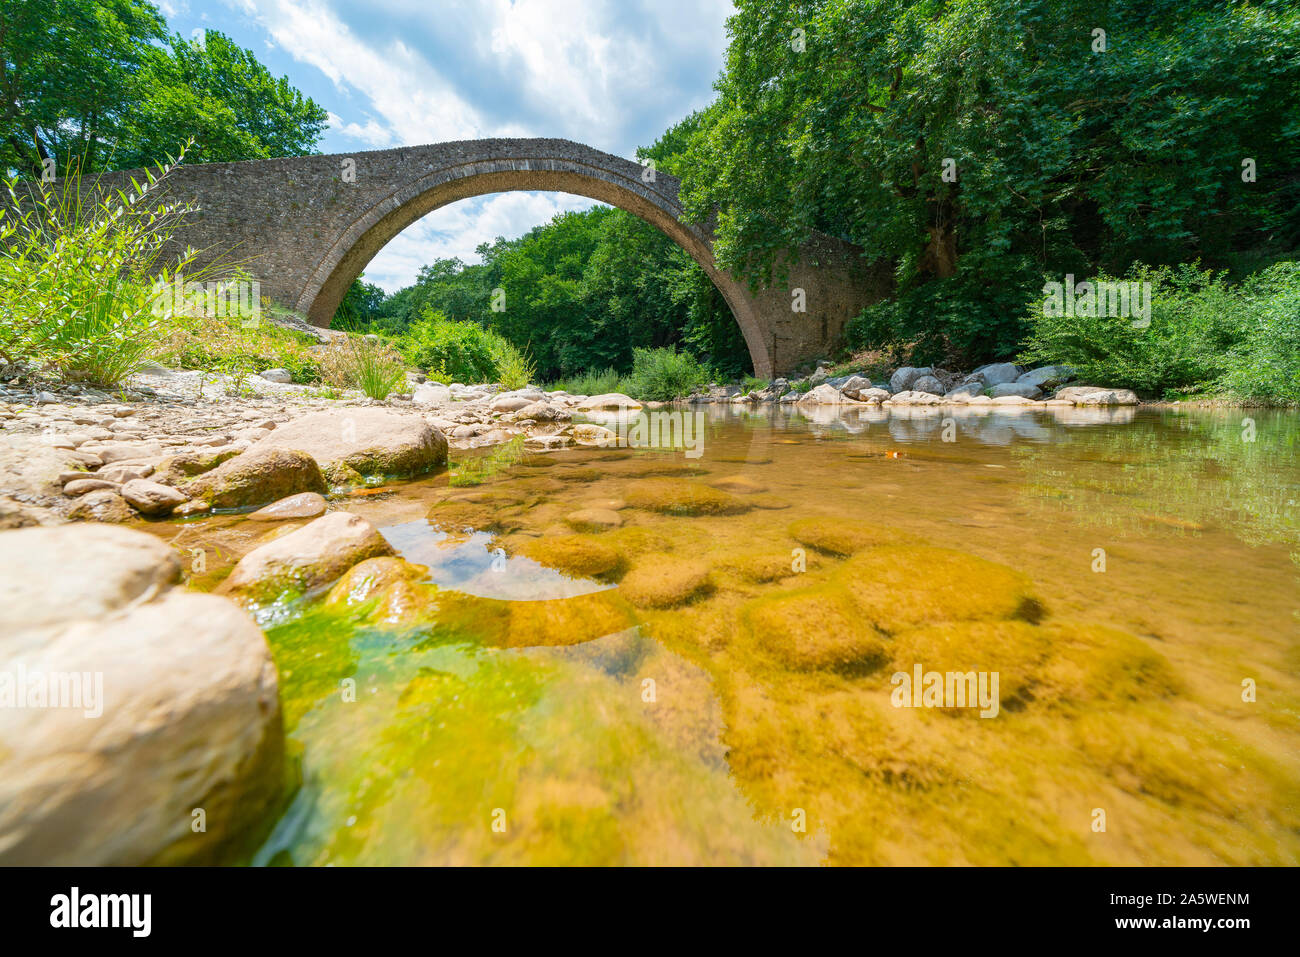 Stony river con alge coperto pietre subacqueo che scorre sotto la pietra storica unica arcata pedestrial ponte a Zagori in montagne in Grecia centrale. Foto Stock